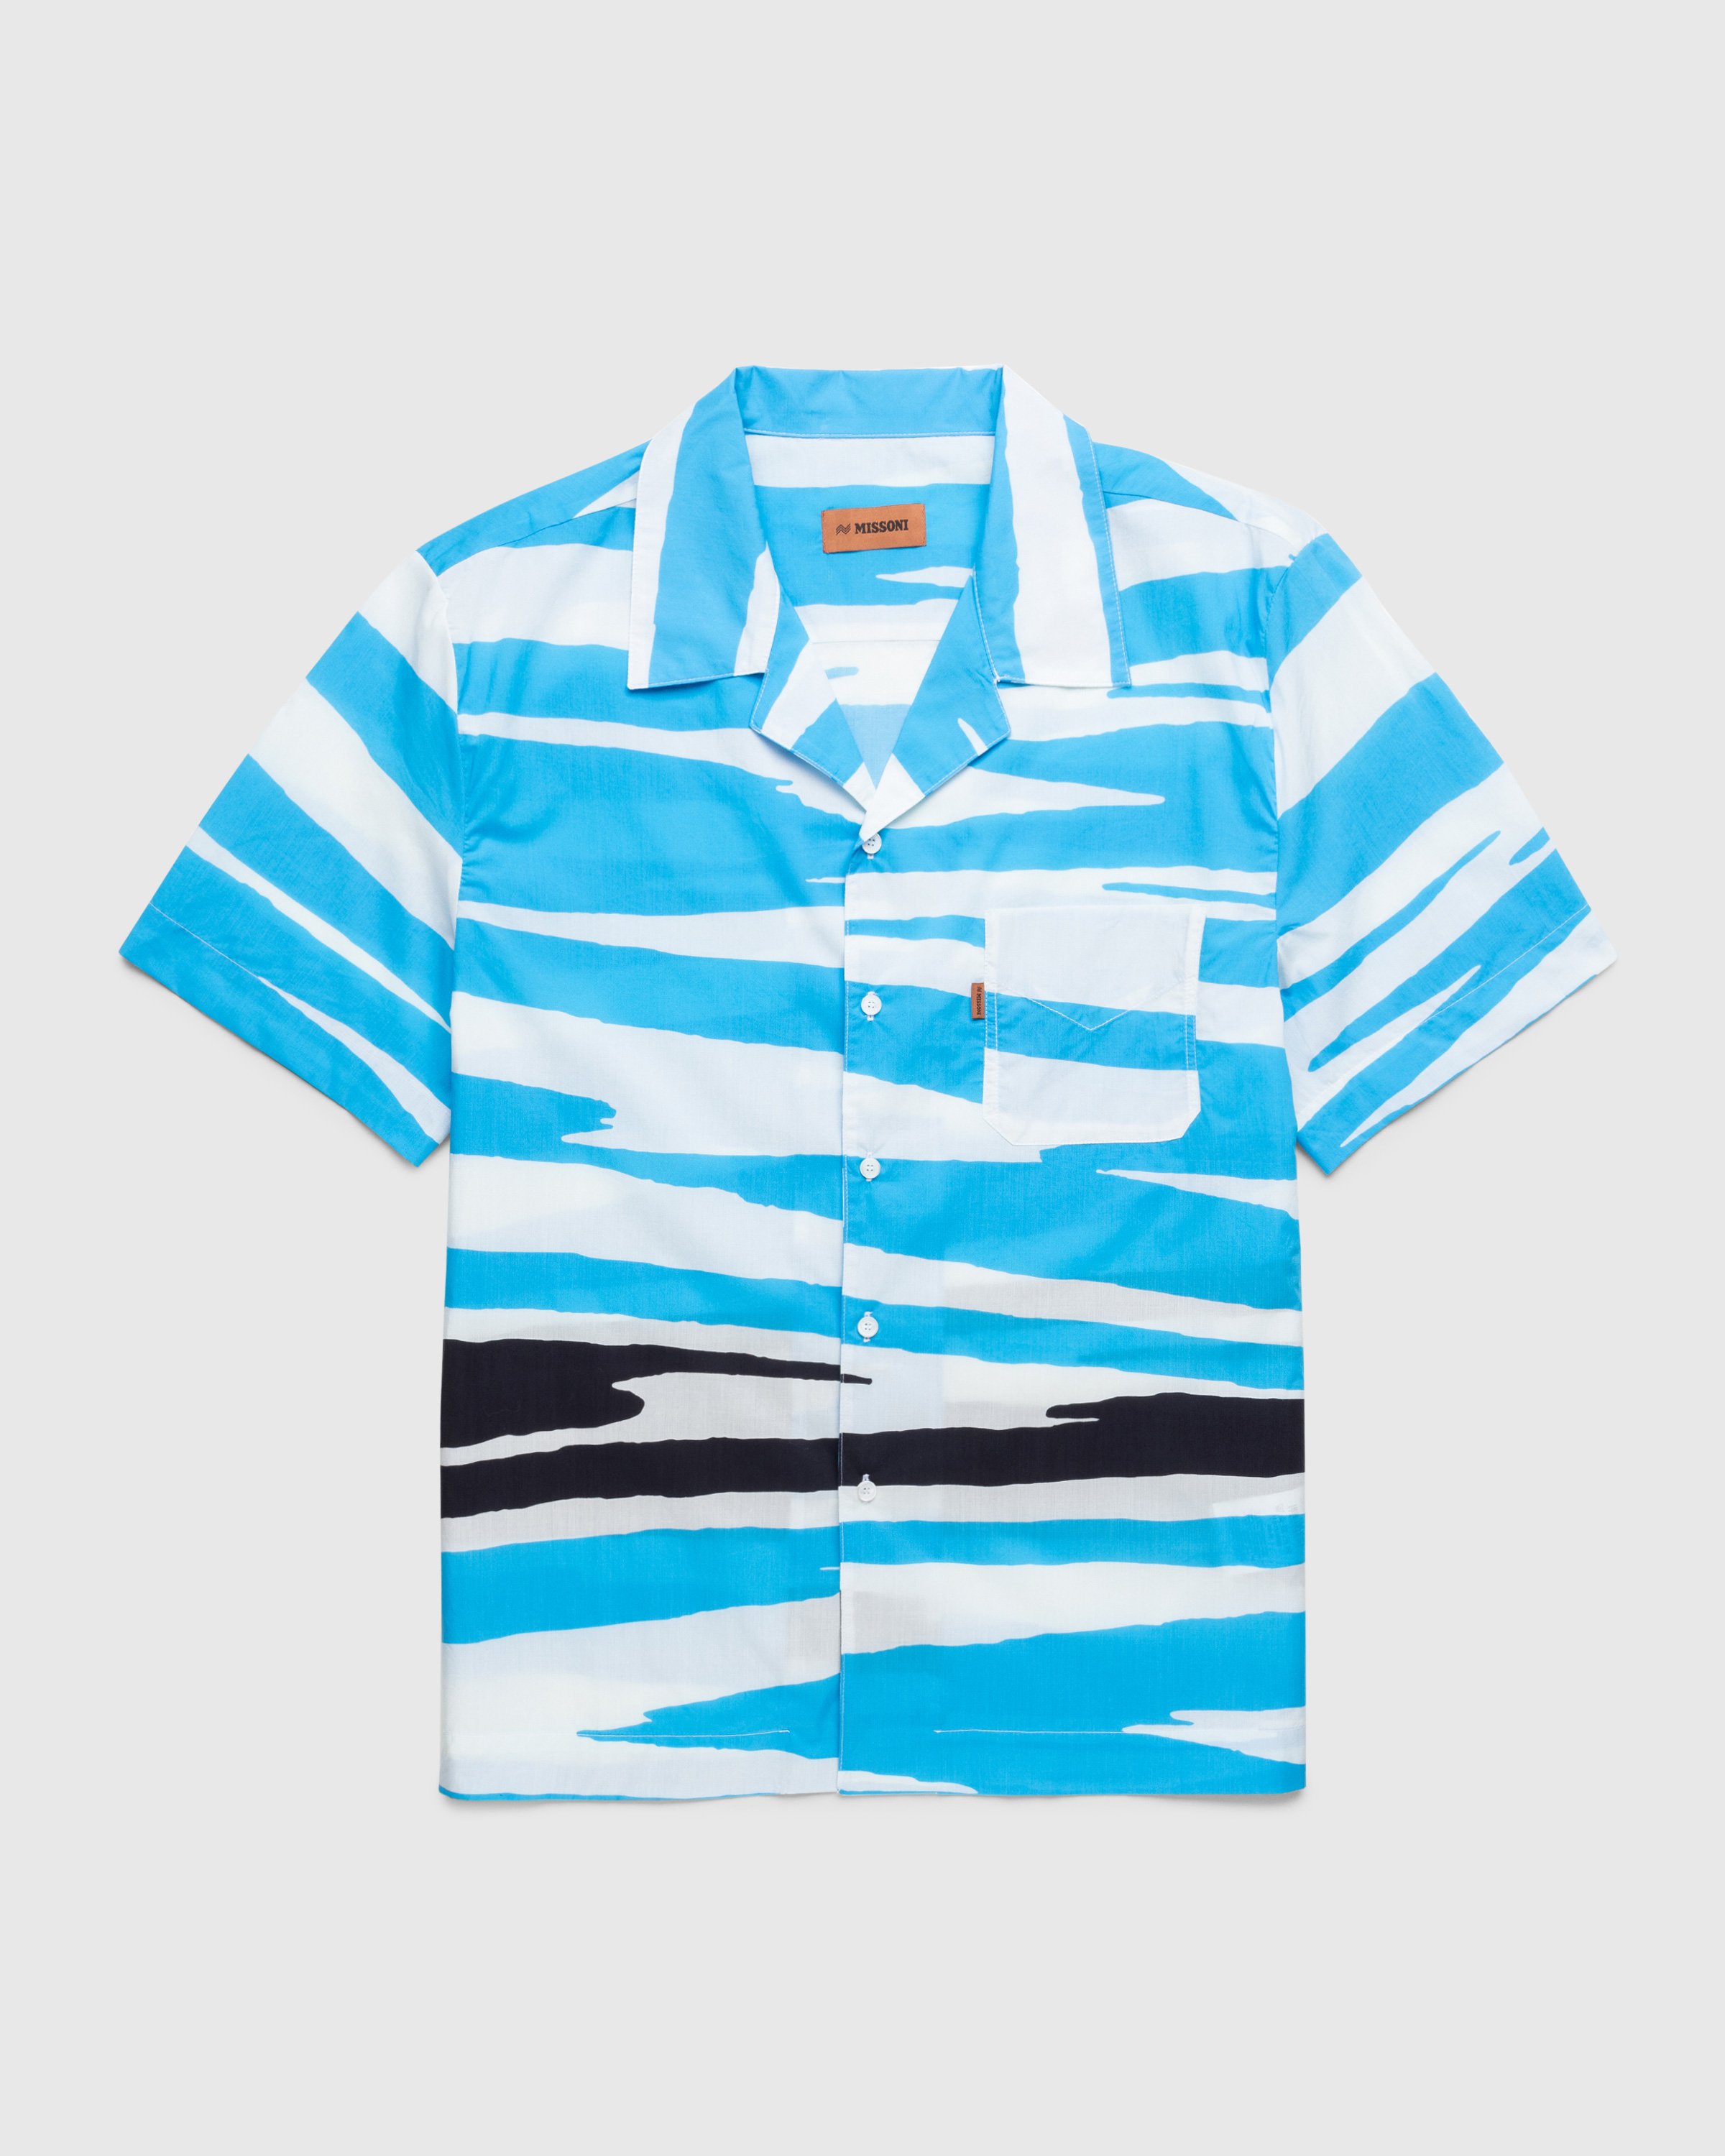 Missoni - Short-Sleeve Sweater Blue/Black/White - Clothing - Multi - Image 1